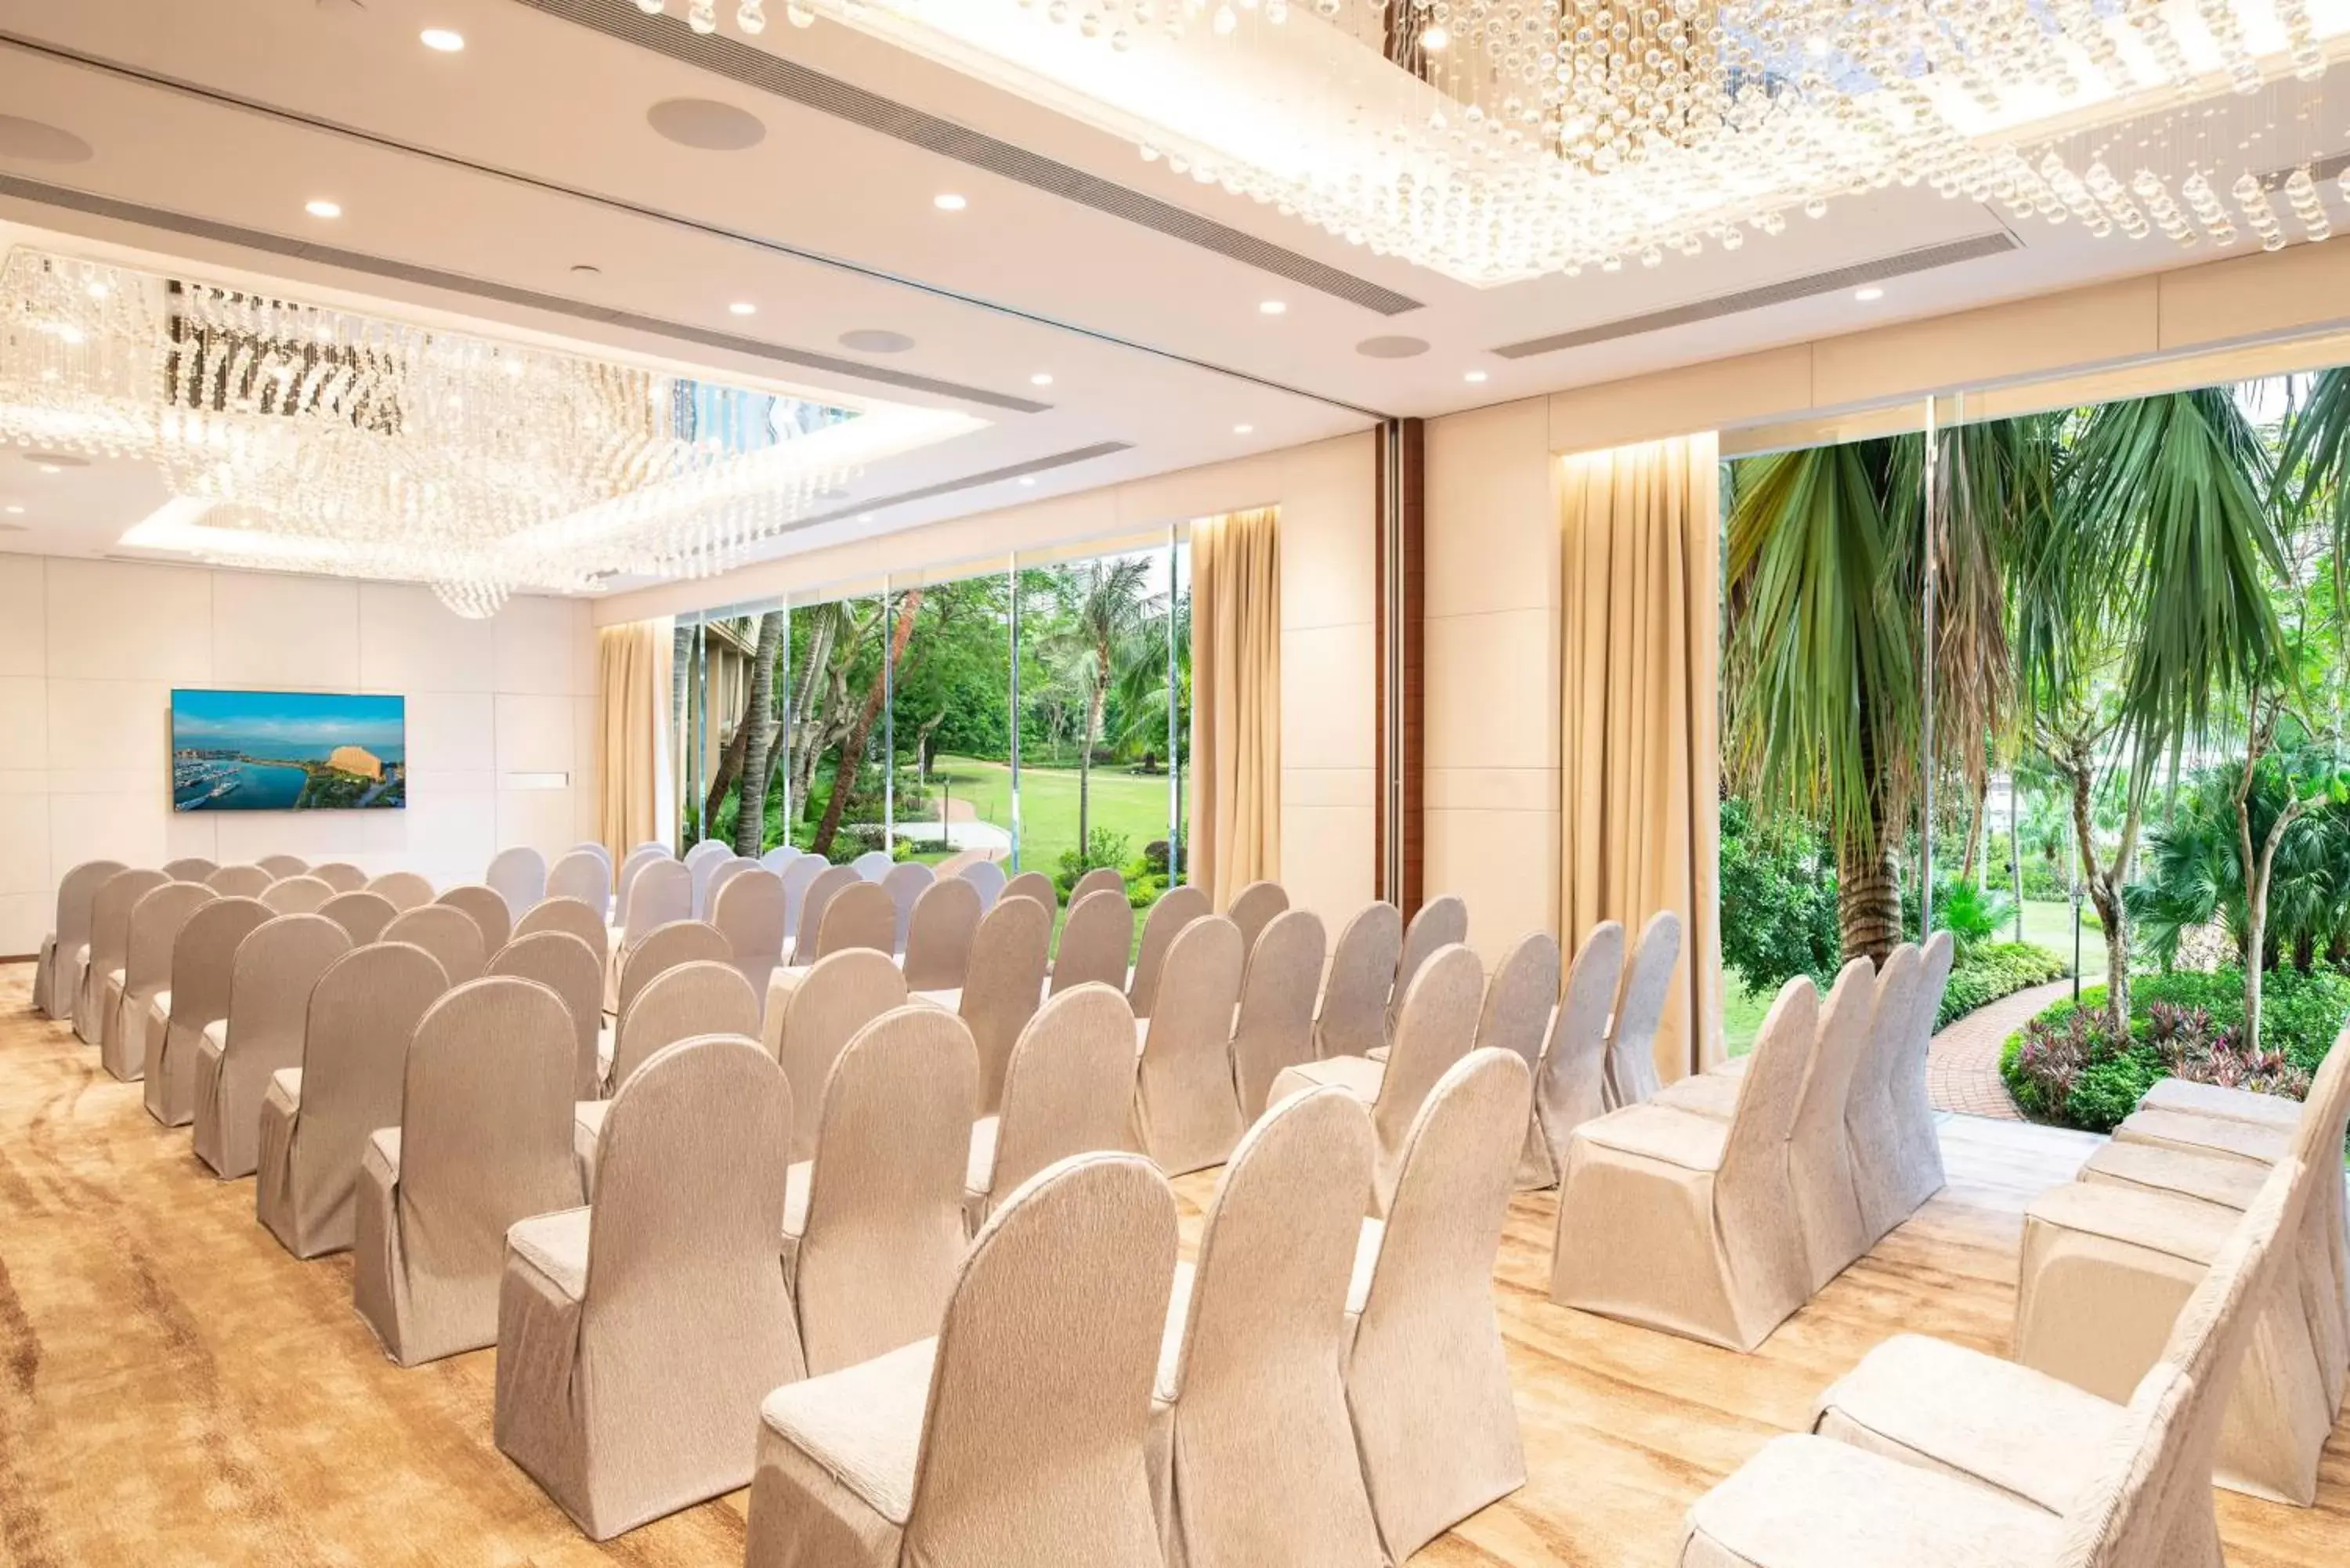 Business facilities, Banquet Facilities in Hong Kong Gold Coast Hotel